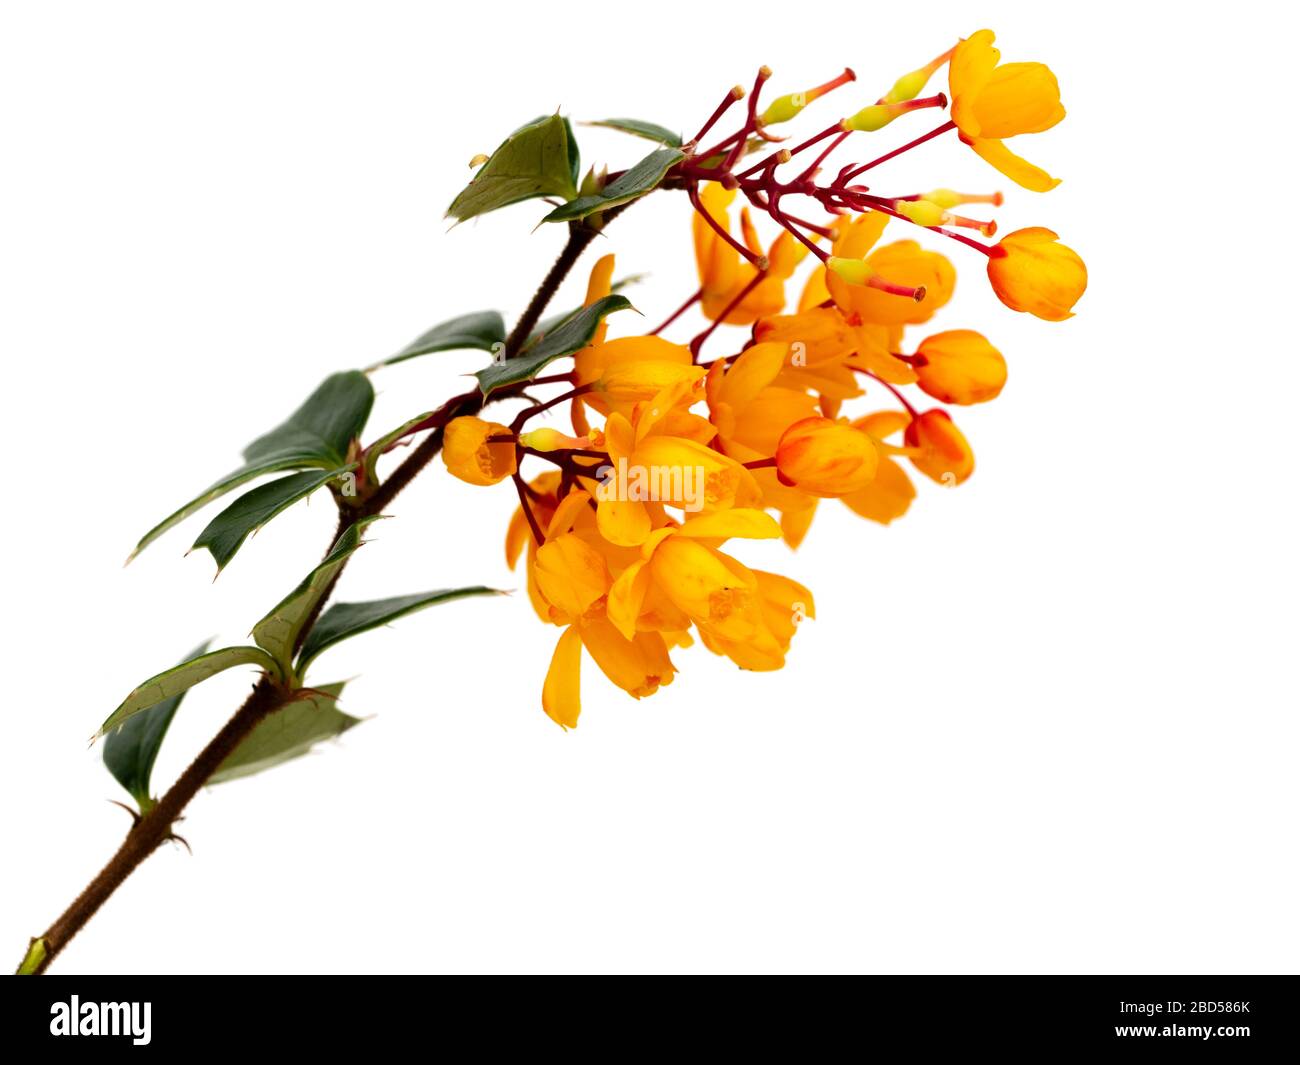 Fleurs orange de la floraison printanière, arbuste vert-feuilles spiky, Berberis darwinii, sur fond blanc Banque D'Images